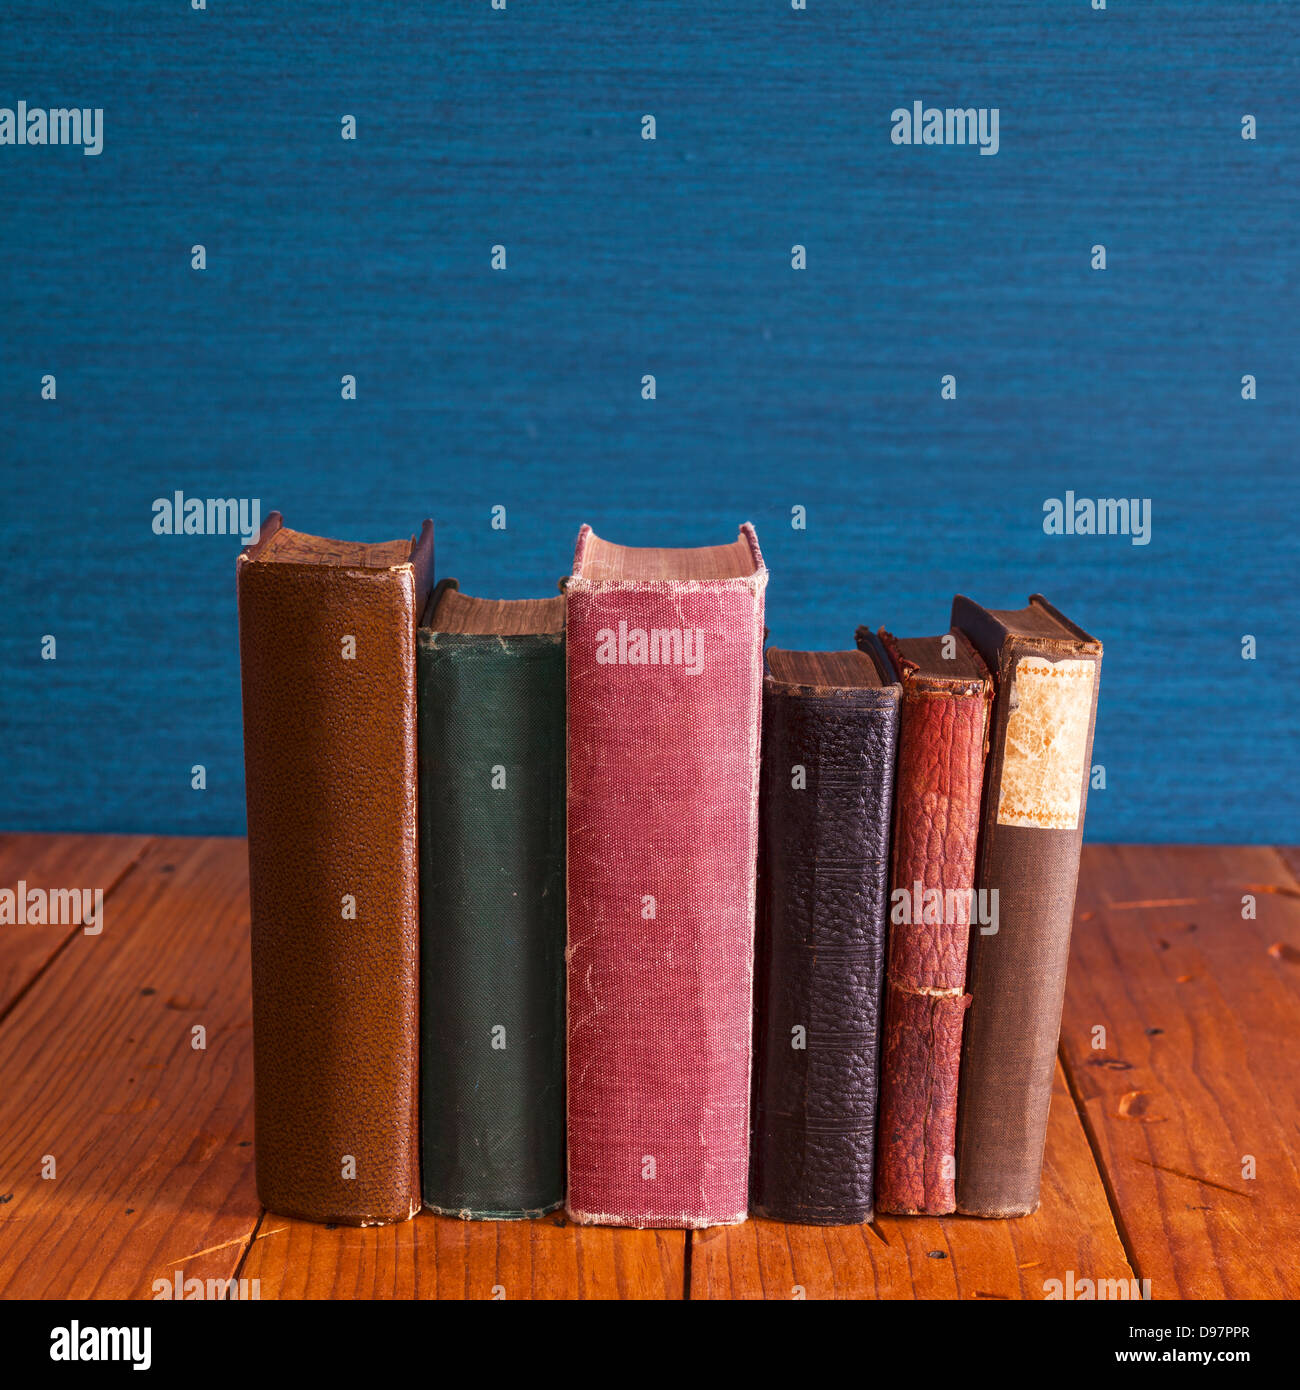 Libros antiguos 0n Tabla de pino rústico - libros antiguos de pie sobre una tabla de pino rústico con copia espacio encima. Foto de stock